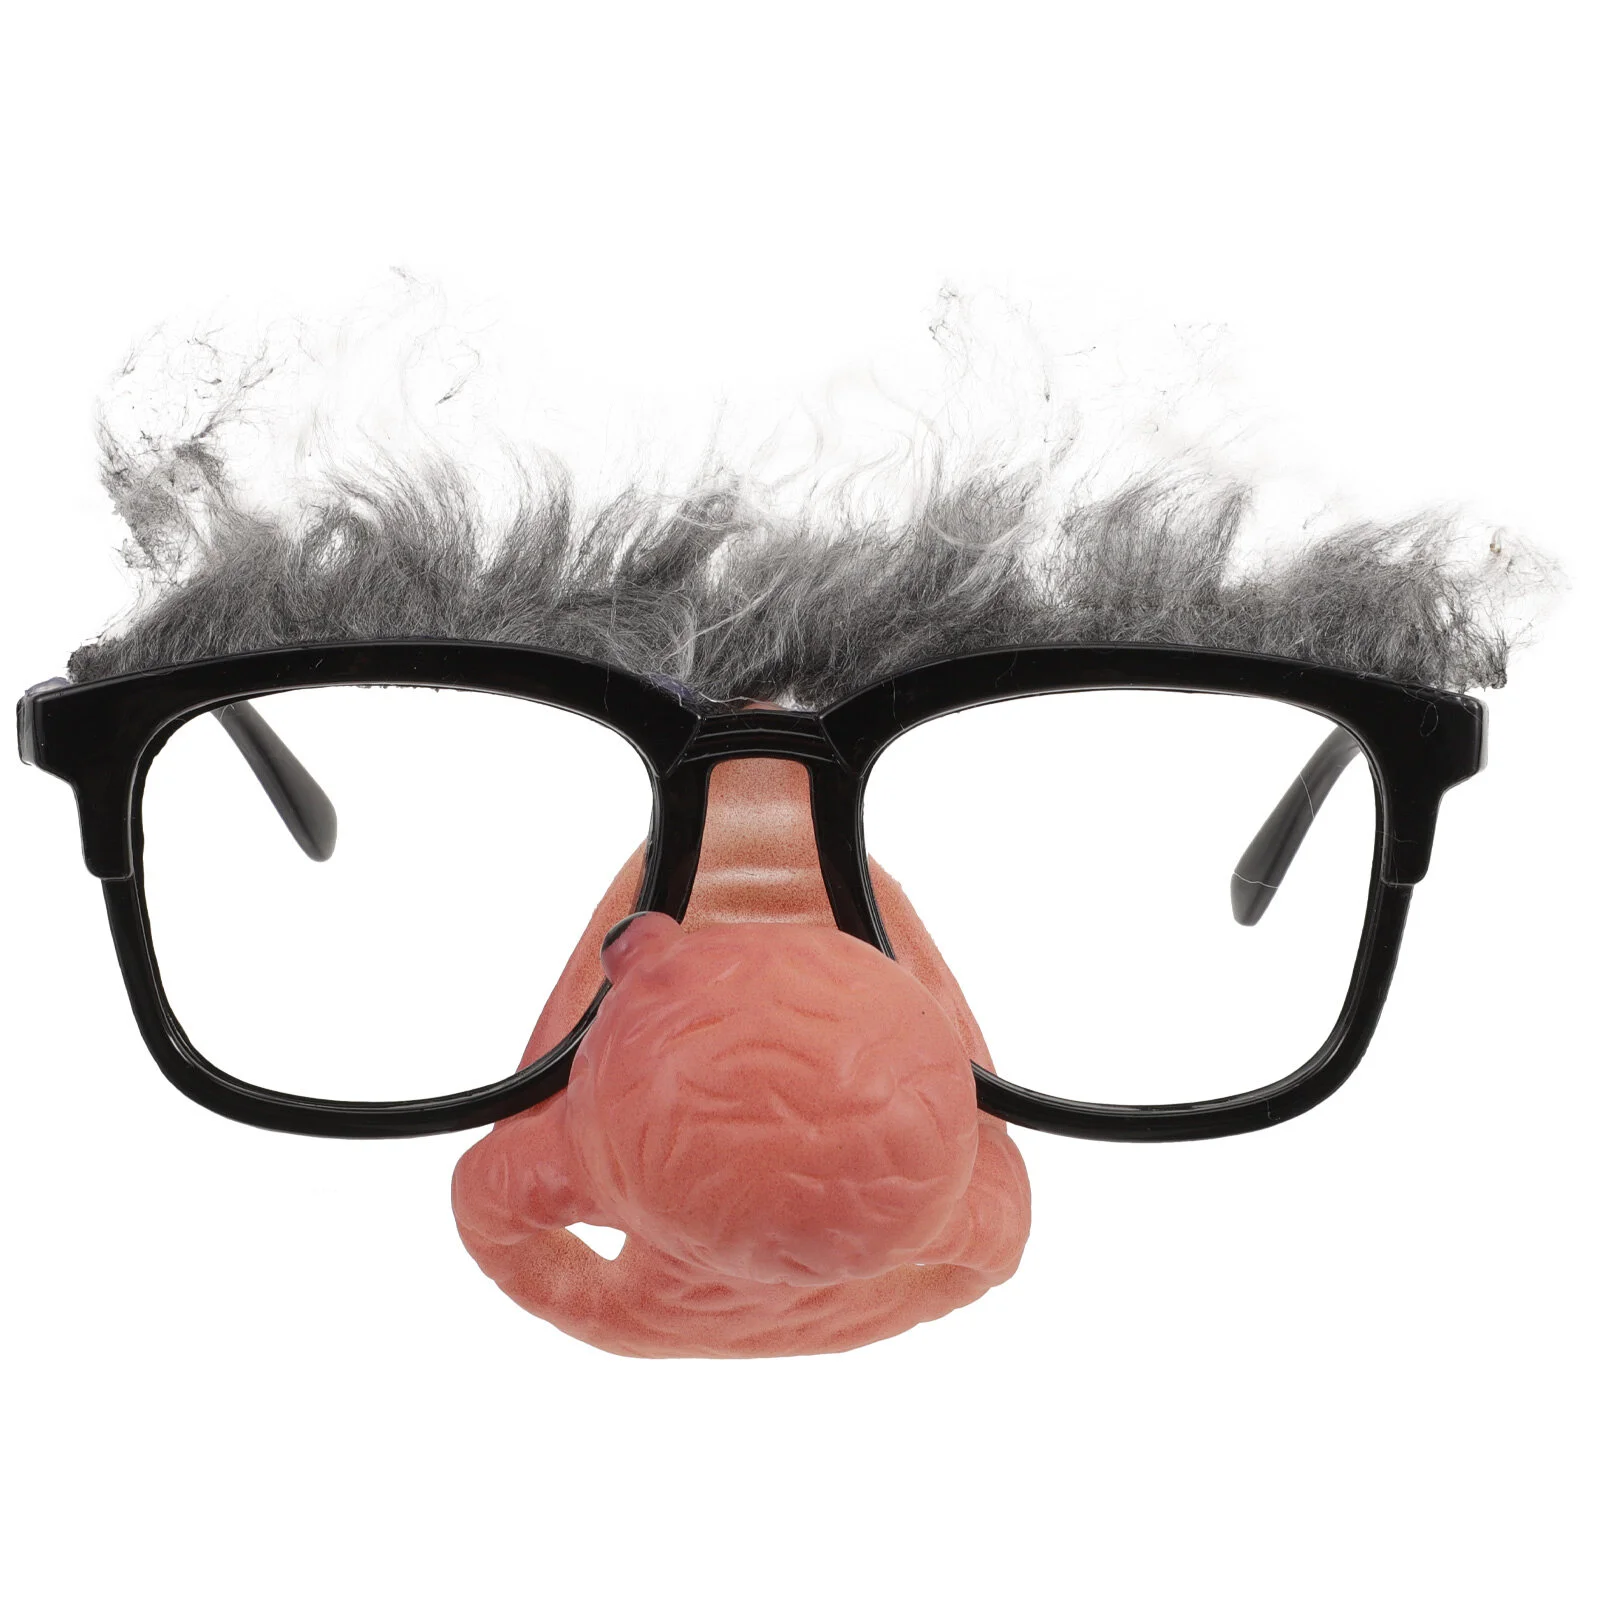 

Забавные очки для носа Новинка Маскировка очки мужские солнцезащитные очки с носом реквизит для костюма клоуна взрослые очки для носа клоуна